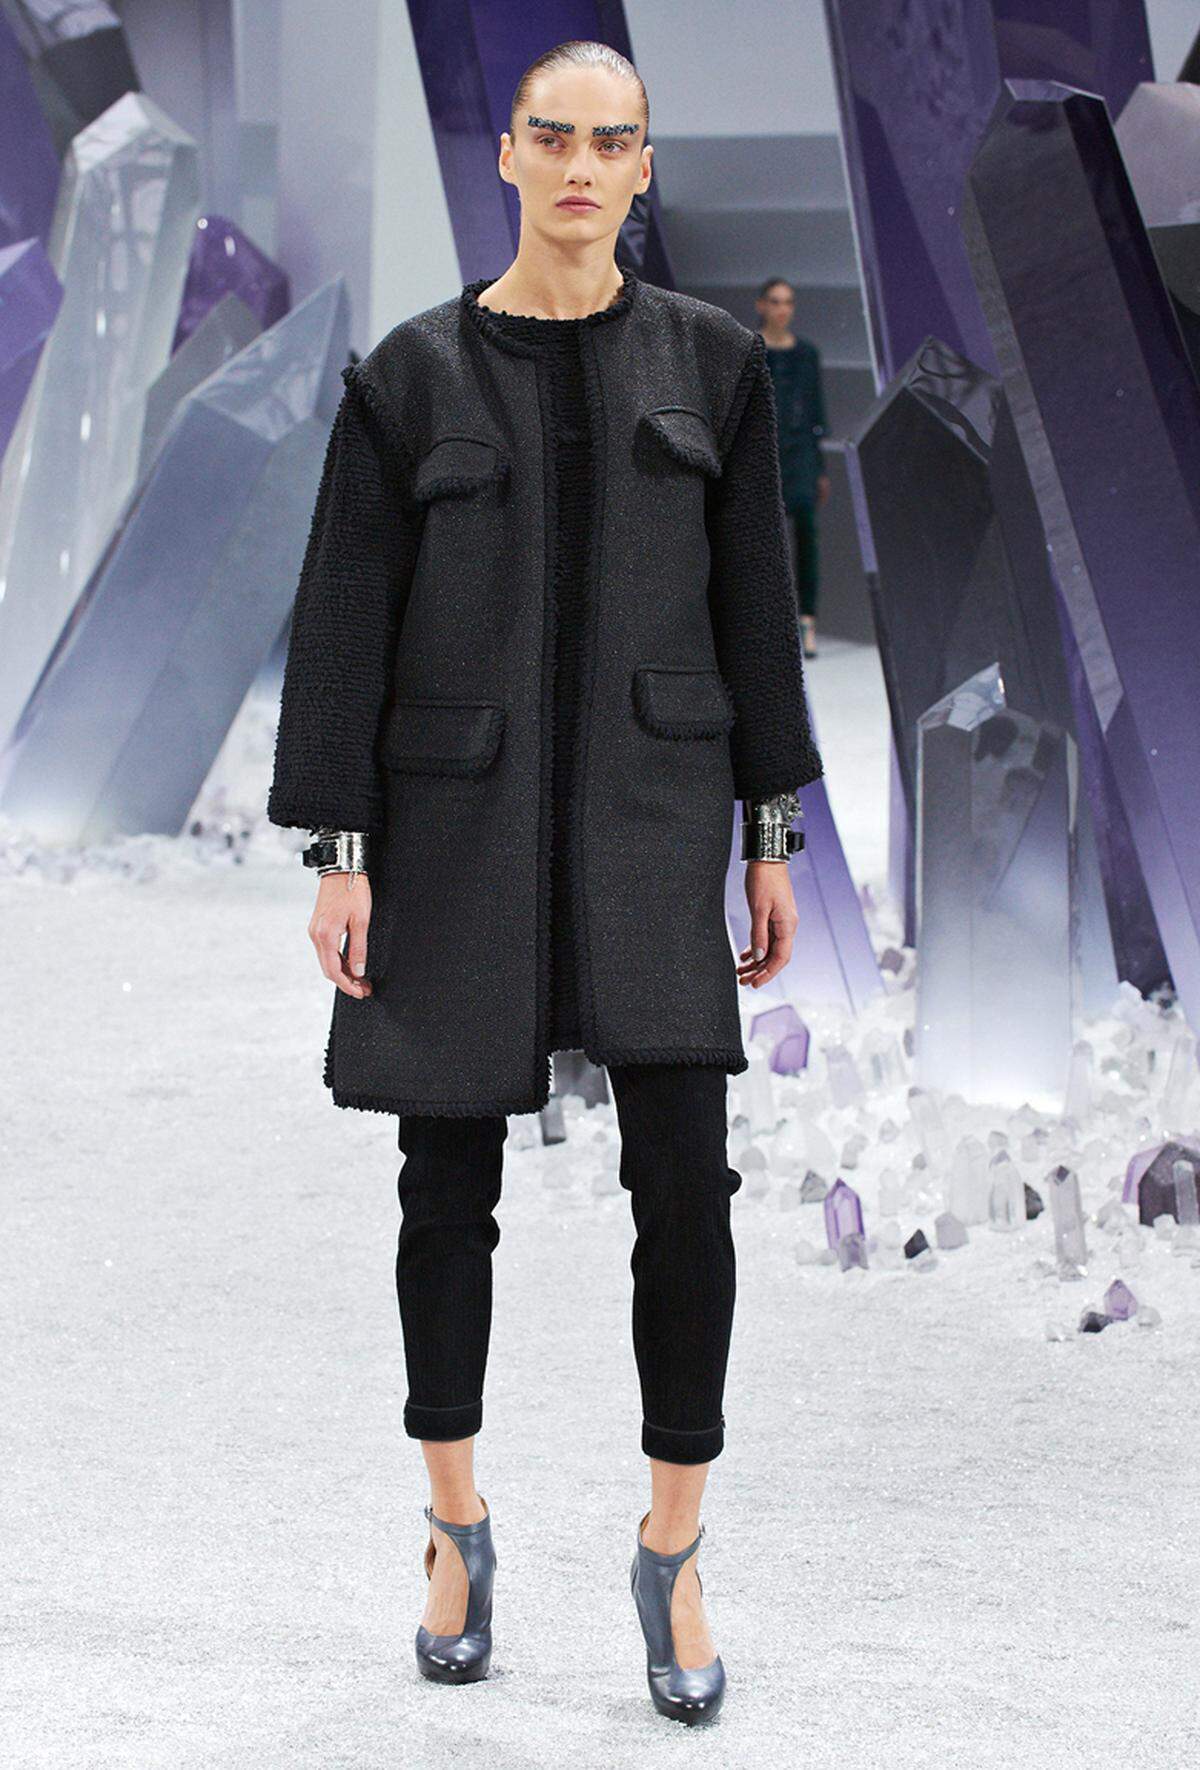 Ähnlich geschnitten, aber mit Taschen und Tweed-Details, lief dieses Model über den Chanel-Catwalk.